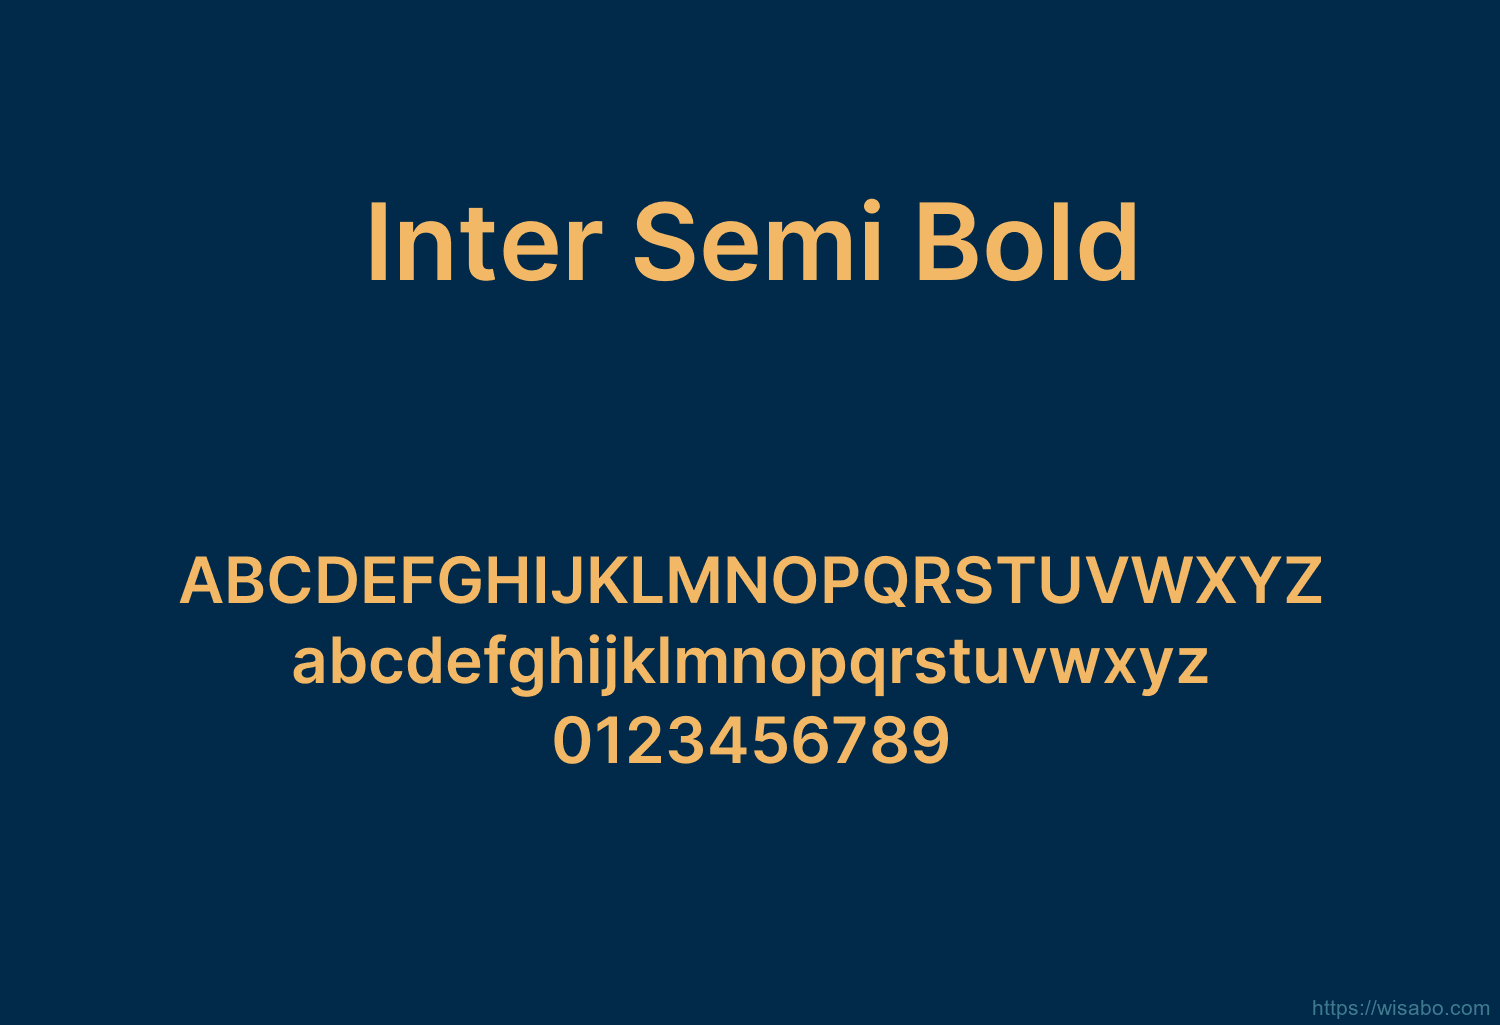 Inter Semi Bold